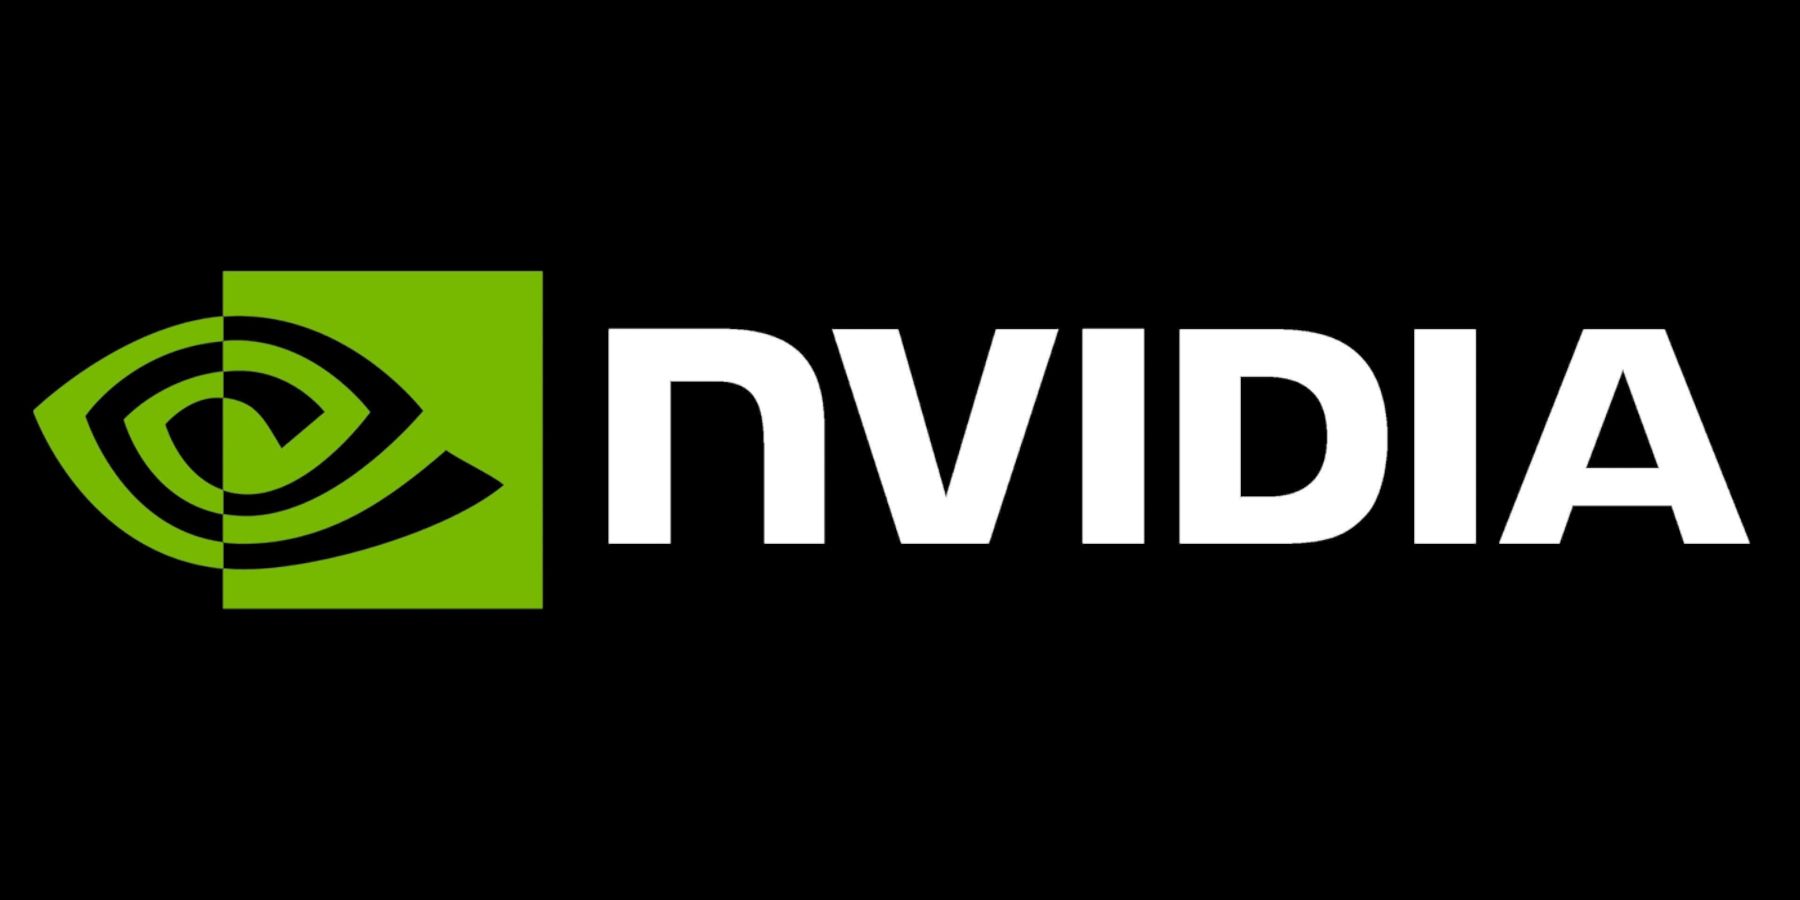 nvidia black and green logo